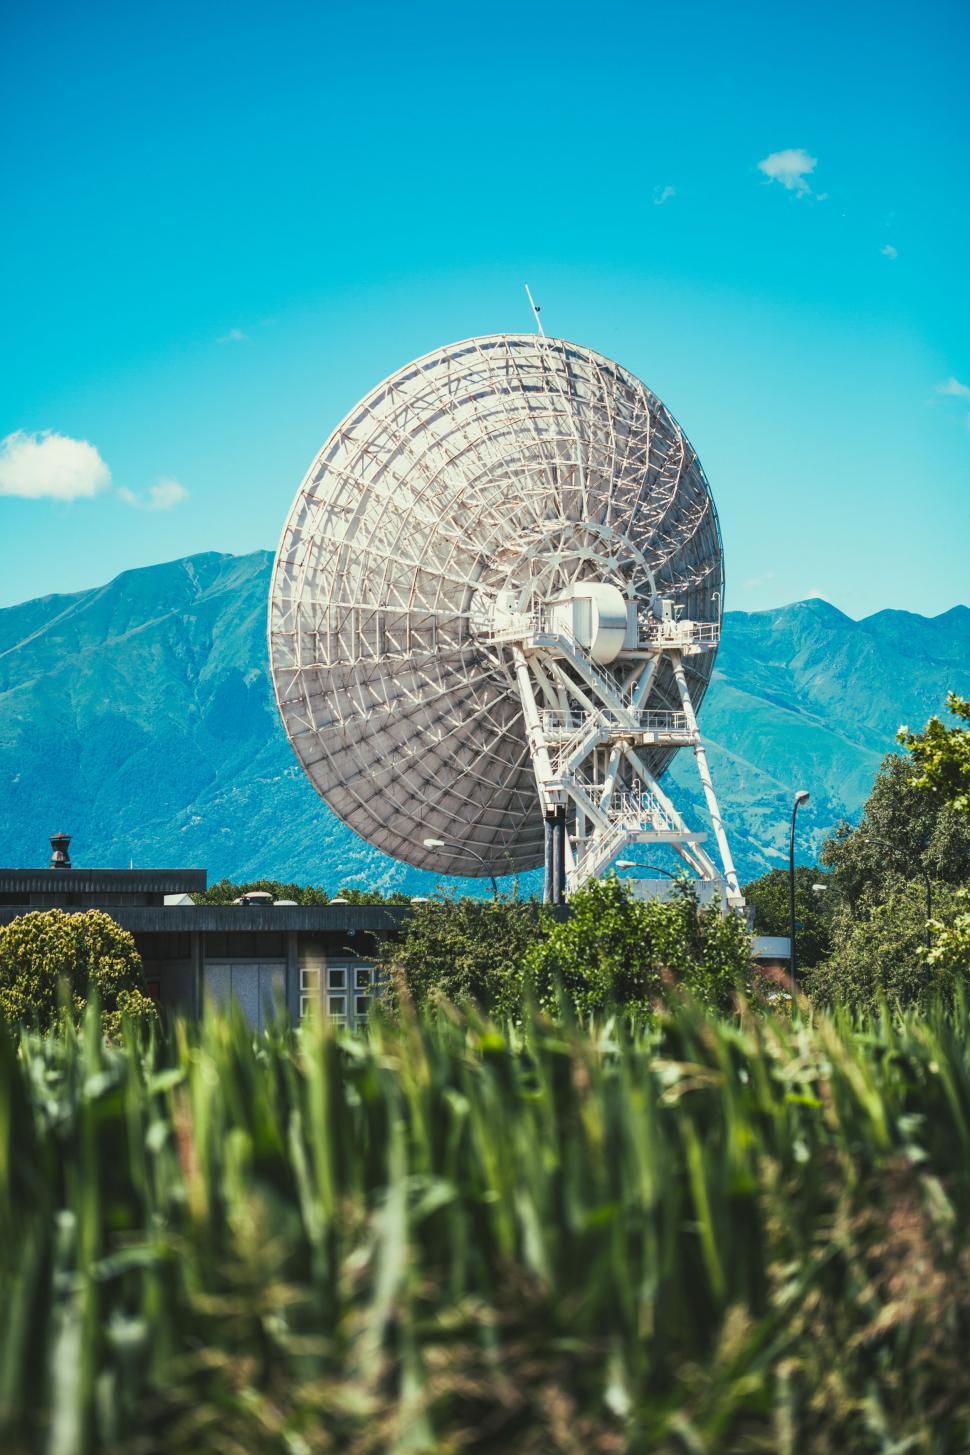 Free Image of Large Satellite Dish on Lush Green Field 